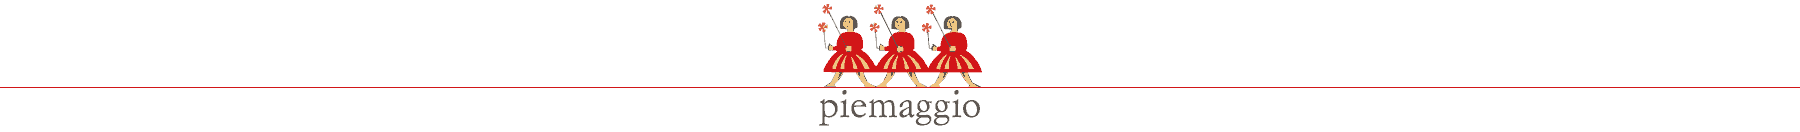 Logo-Piemaggio-1800px_centre_small